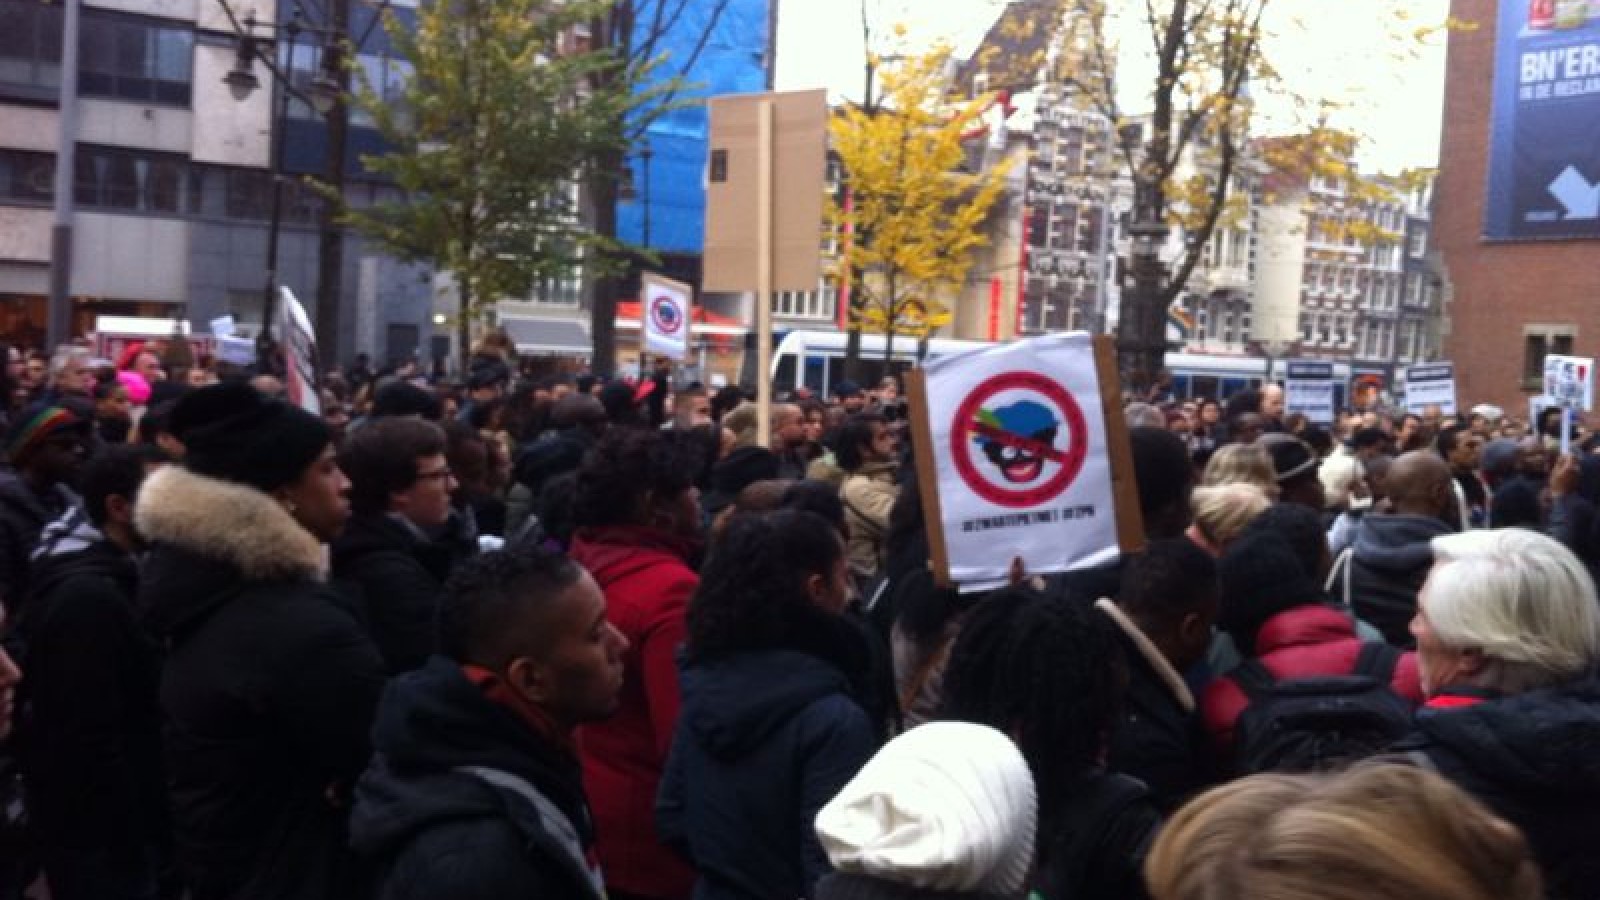 Honderden bij protest tegen Zwarte Piet